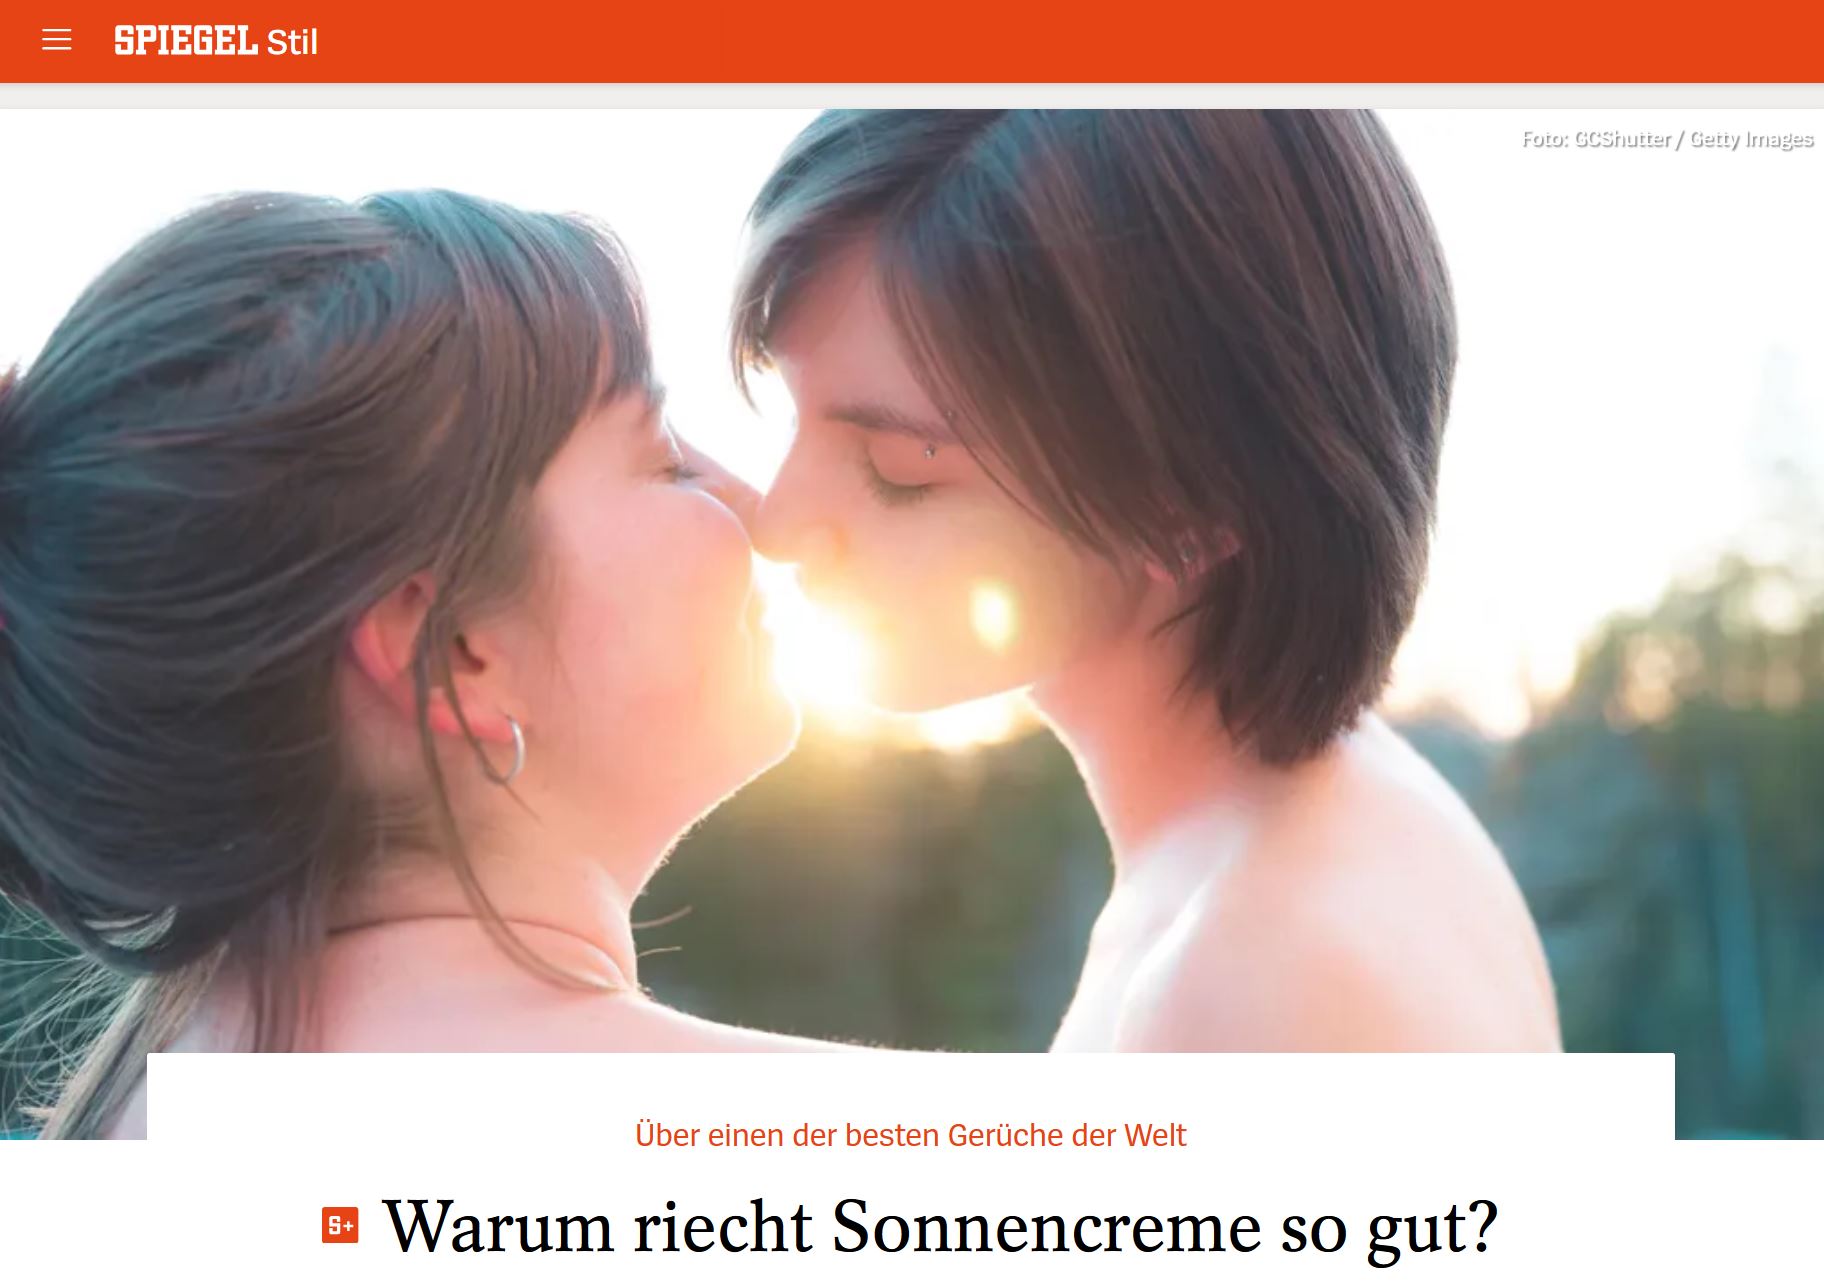 Zwei Frauen küssen sich, zwischen ihren Mündern blendet die untergehende Sonne